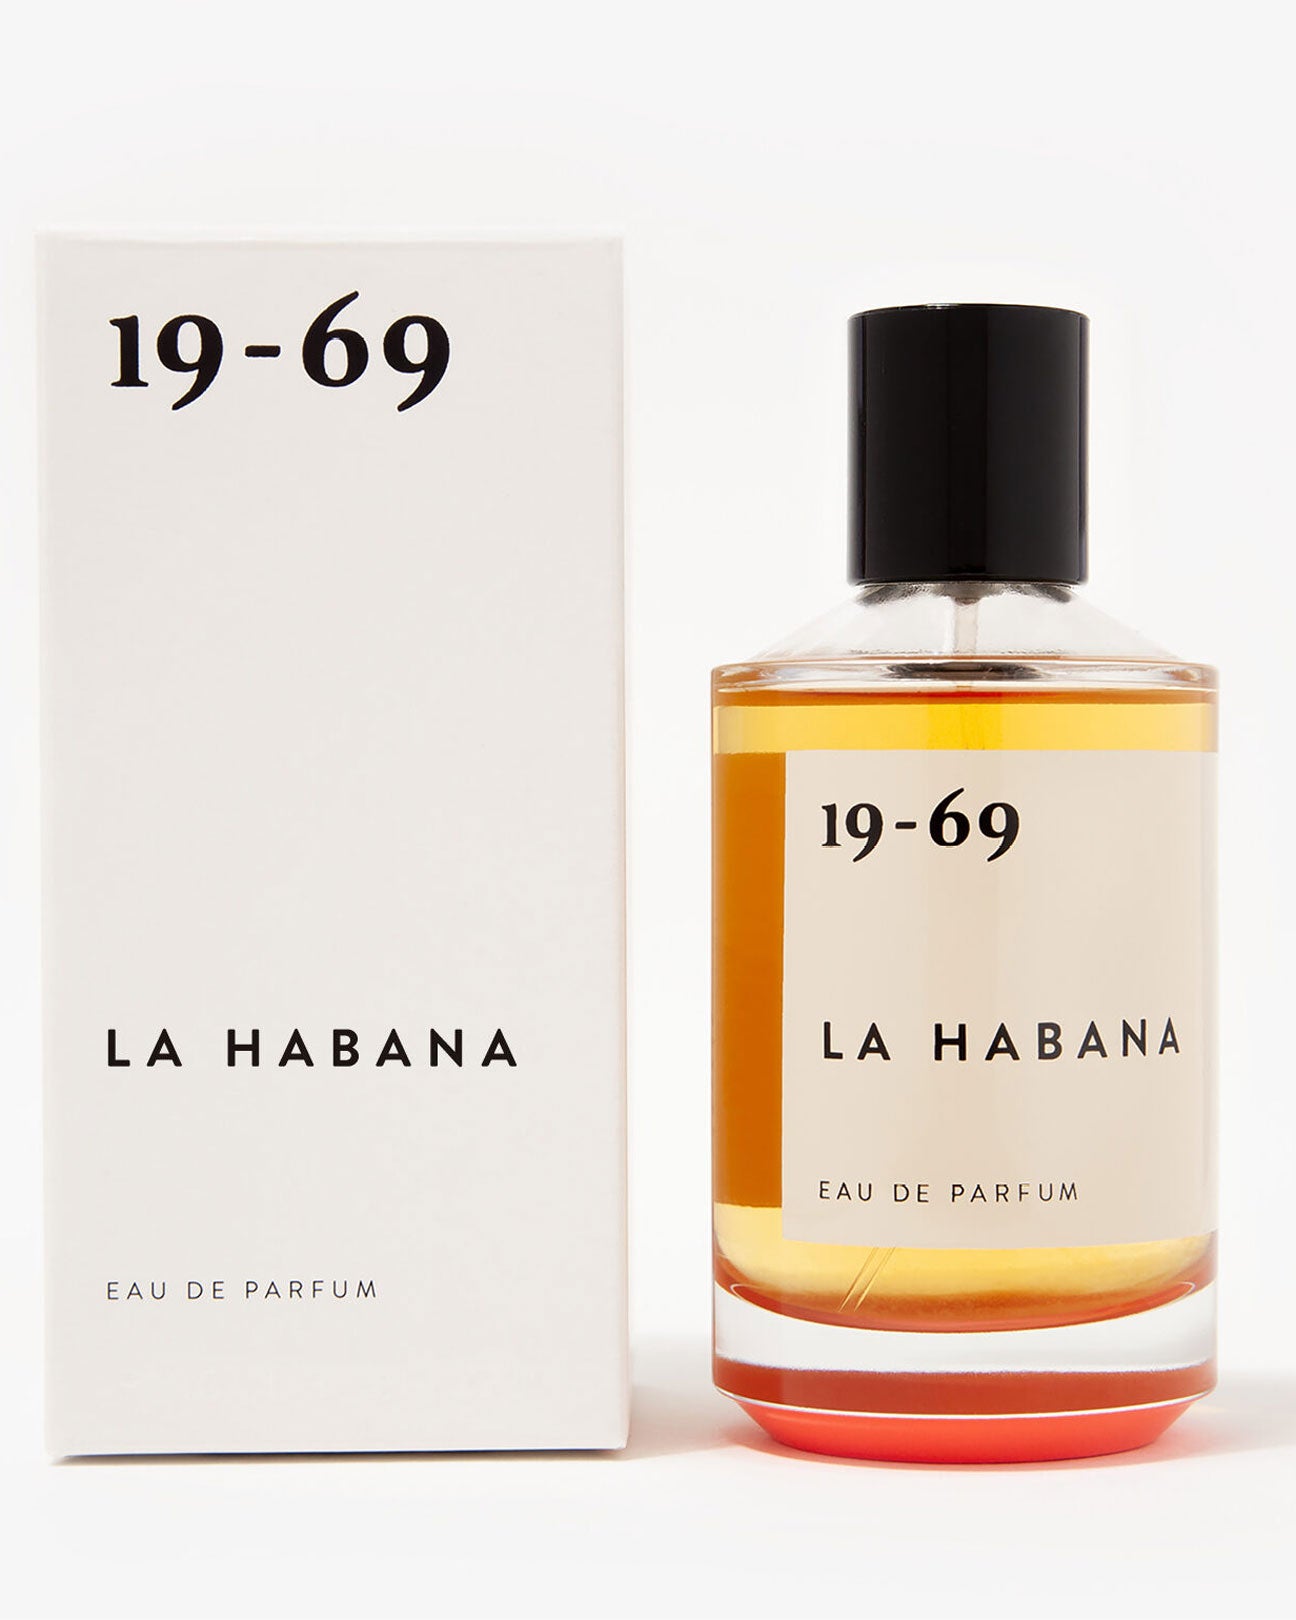 19-69 Eau De Parfum 30ml. in La Habana available at Lahn.shop